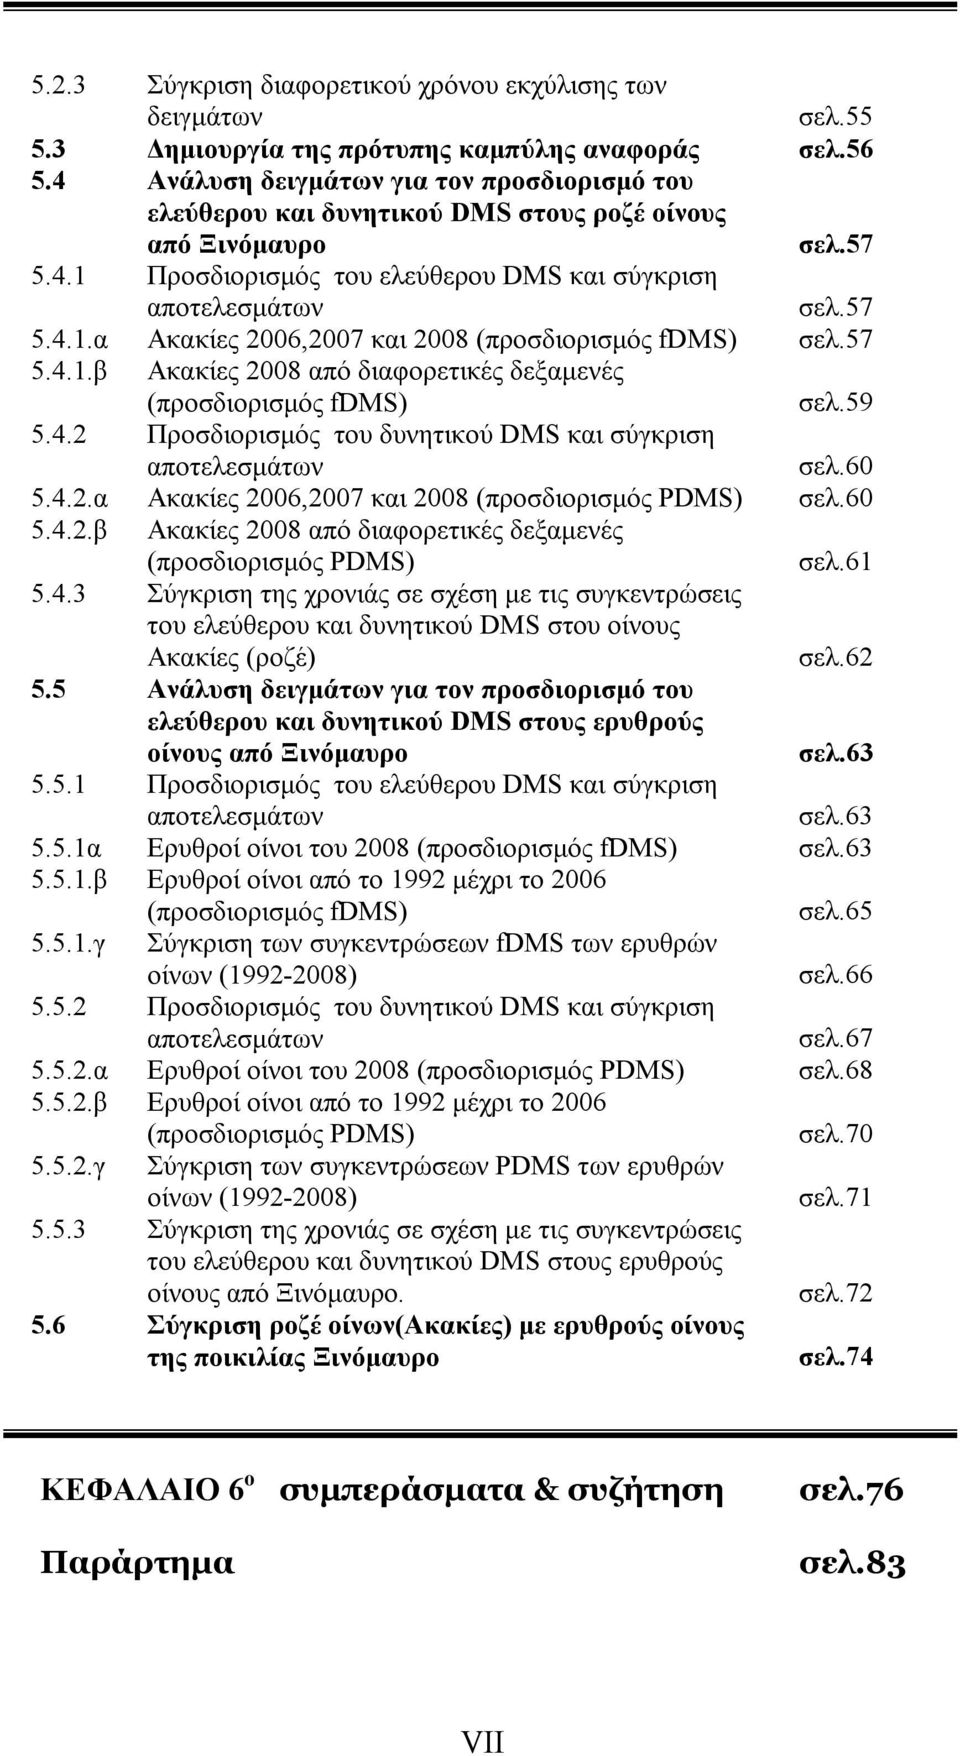 57 5.4.1.β Ακακίες 2008 από διαφορετικές δεξαμενές (προσδιορισμός fdms) σελ.59 5.4.2 Προσδιορισμός του δυνητικού DMS και σύγκριση αποτελεσμάτων σελ.60 5.4.2.α Ακακίες 2006,2007 και 2008 (προσδιορισμός PDMS) σελ.